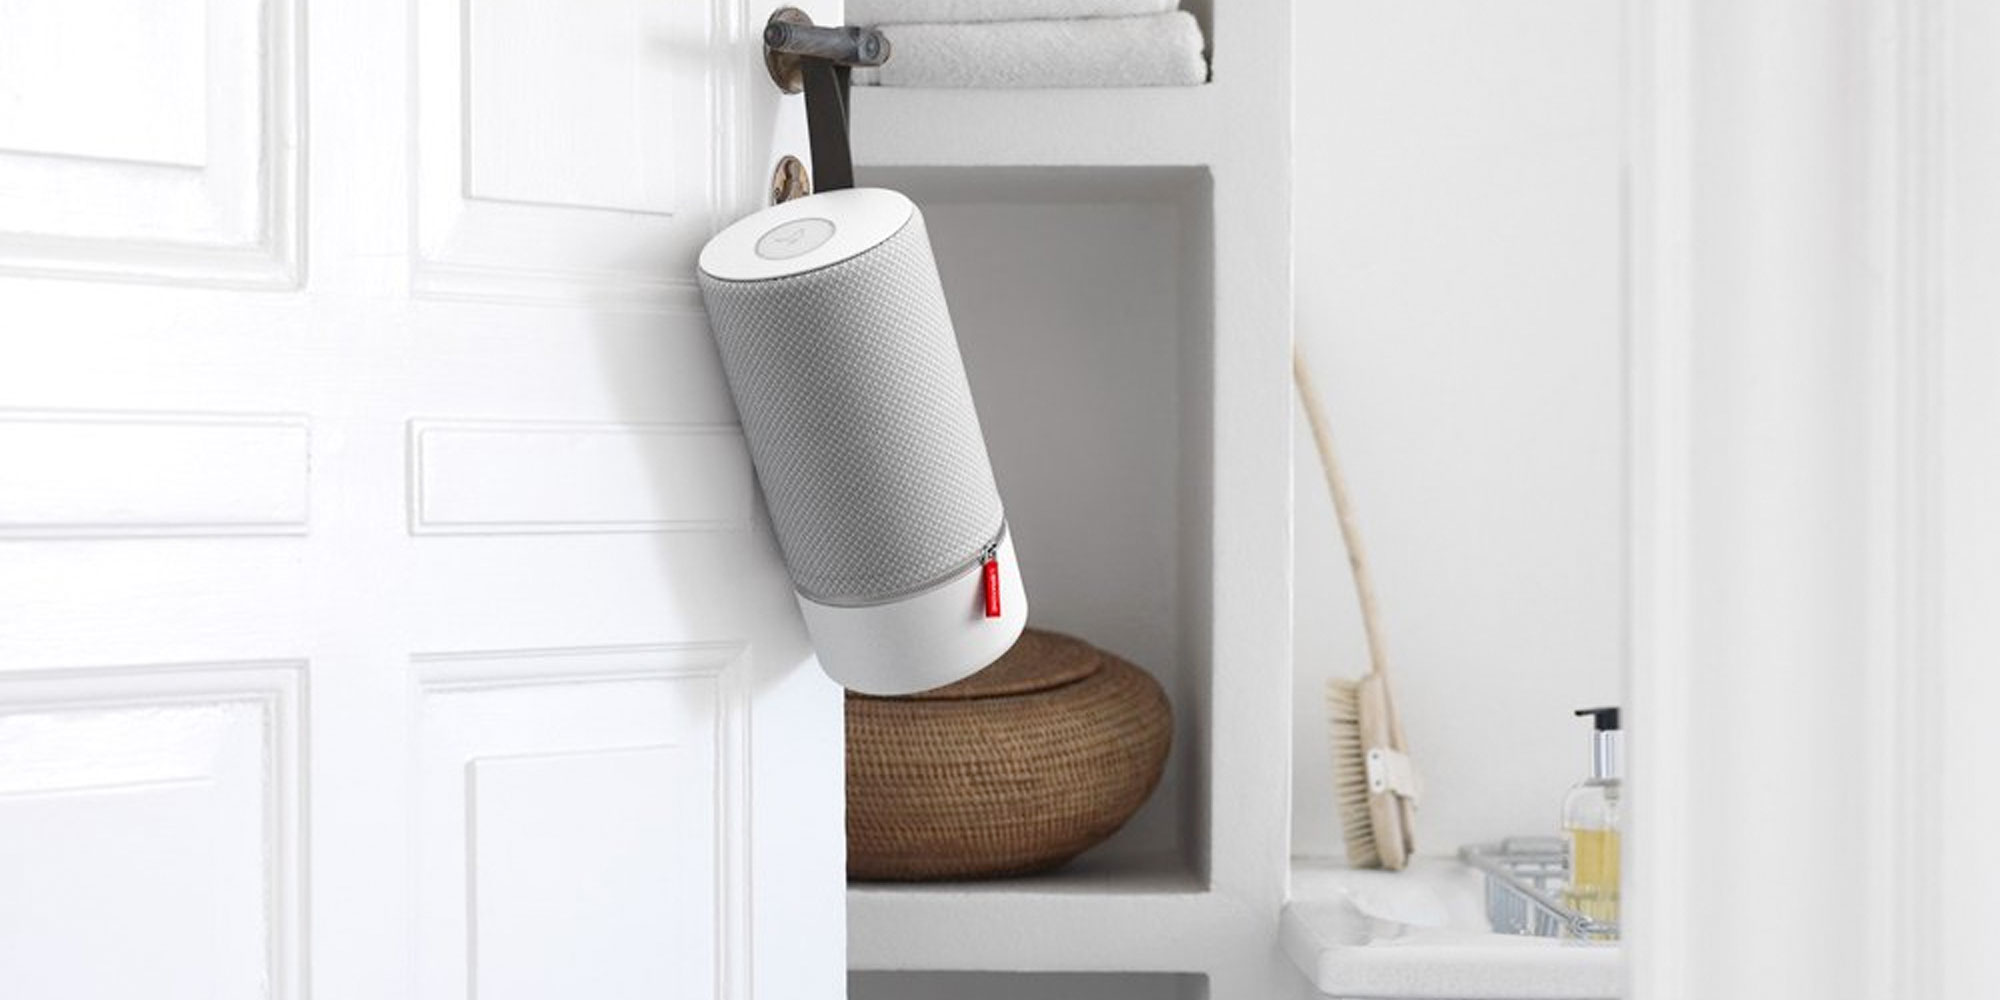 airplay bathroom speaker